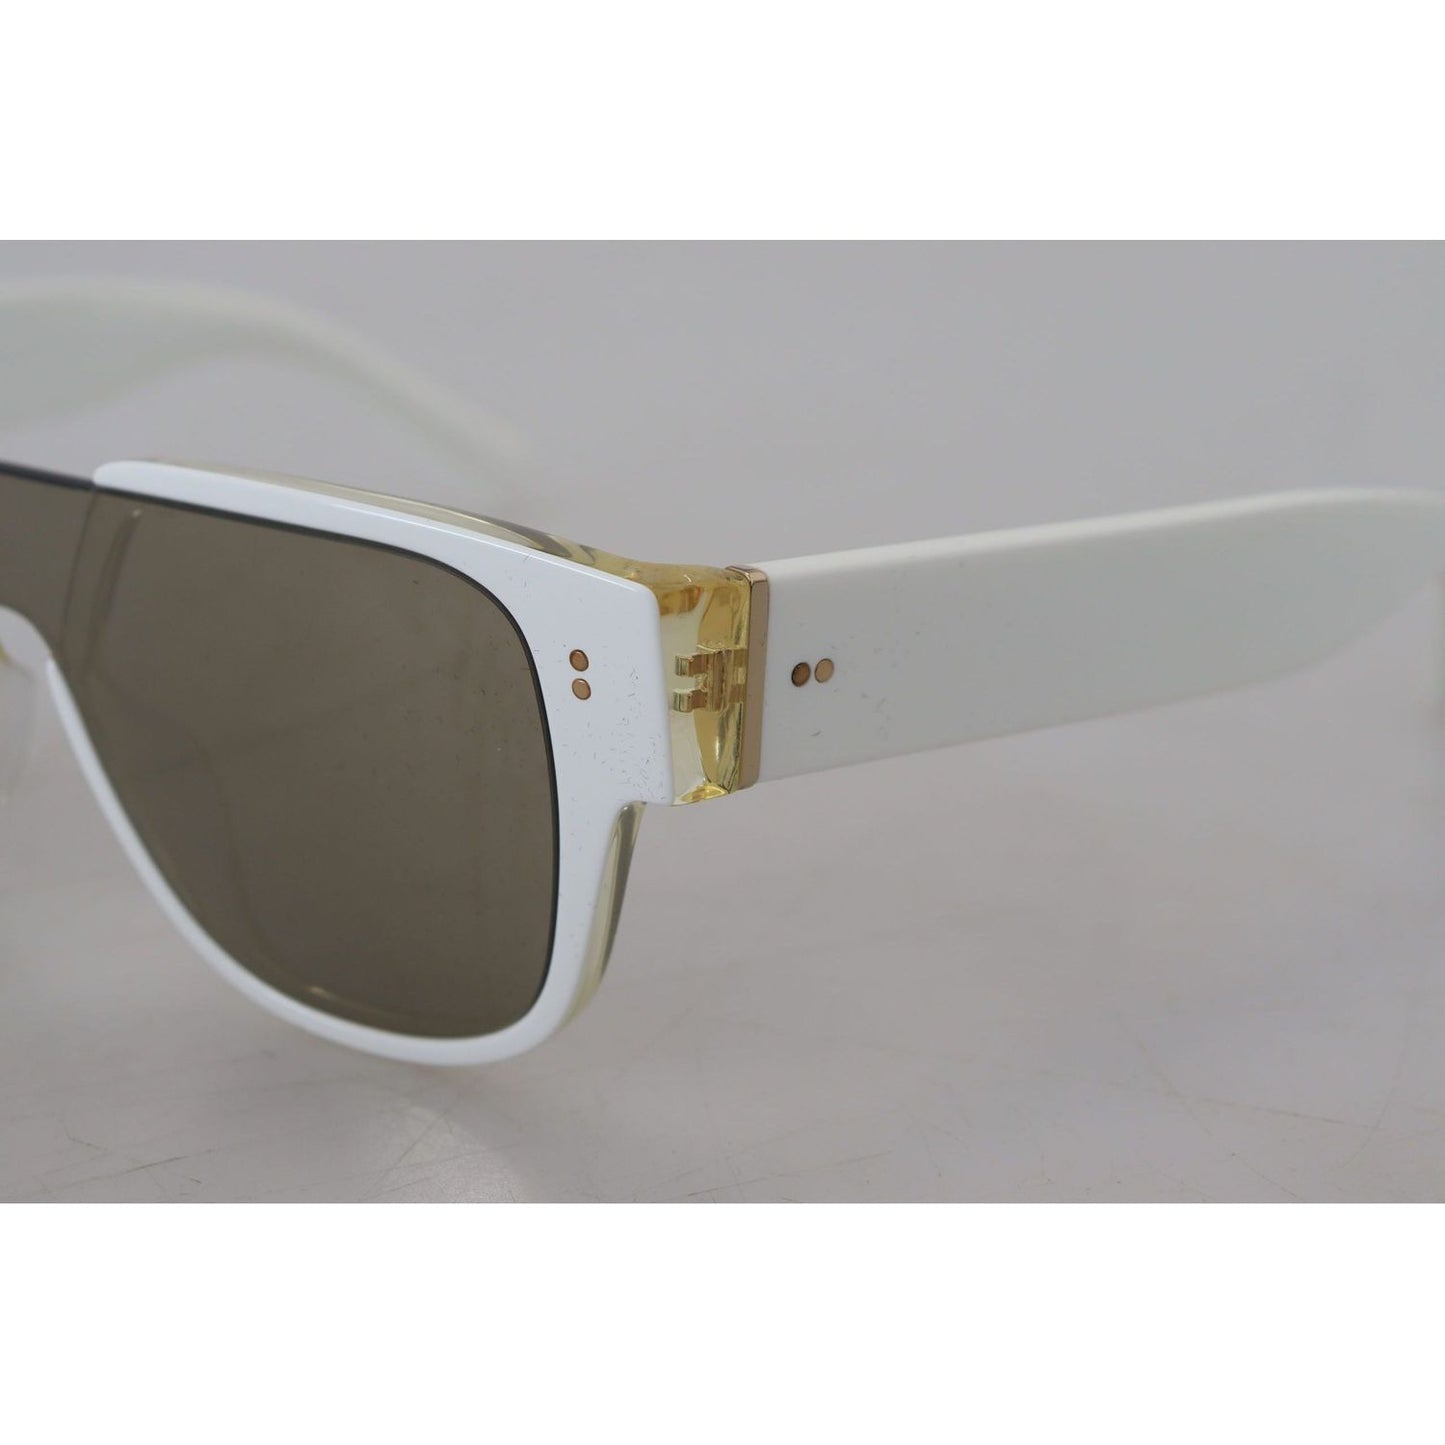 Dolce & Gabbana Elegant White Acetate Sunglasses for Women white-acetate-full-rim-frame-shades-dg4356f-sunglasses IMG_4042-scaled-b6e30692-2be.jpg